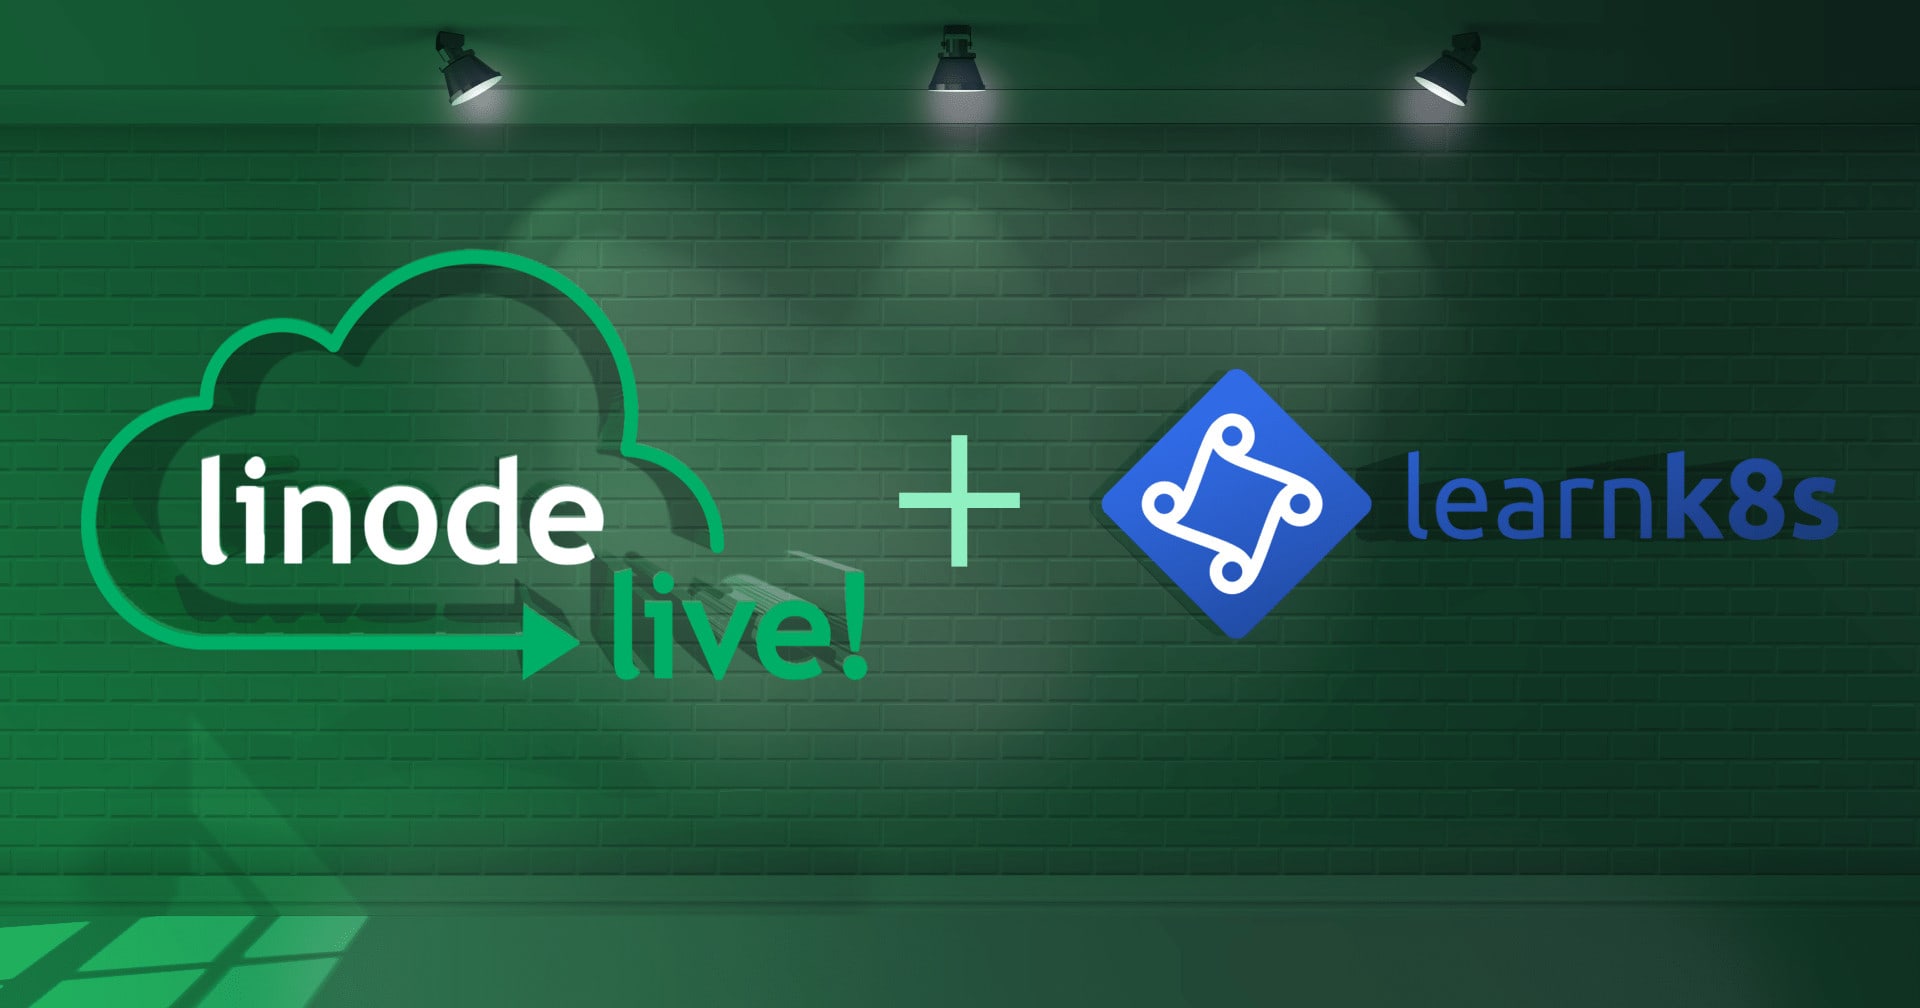 Linode Live Blog Header with LK8s